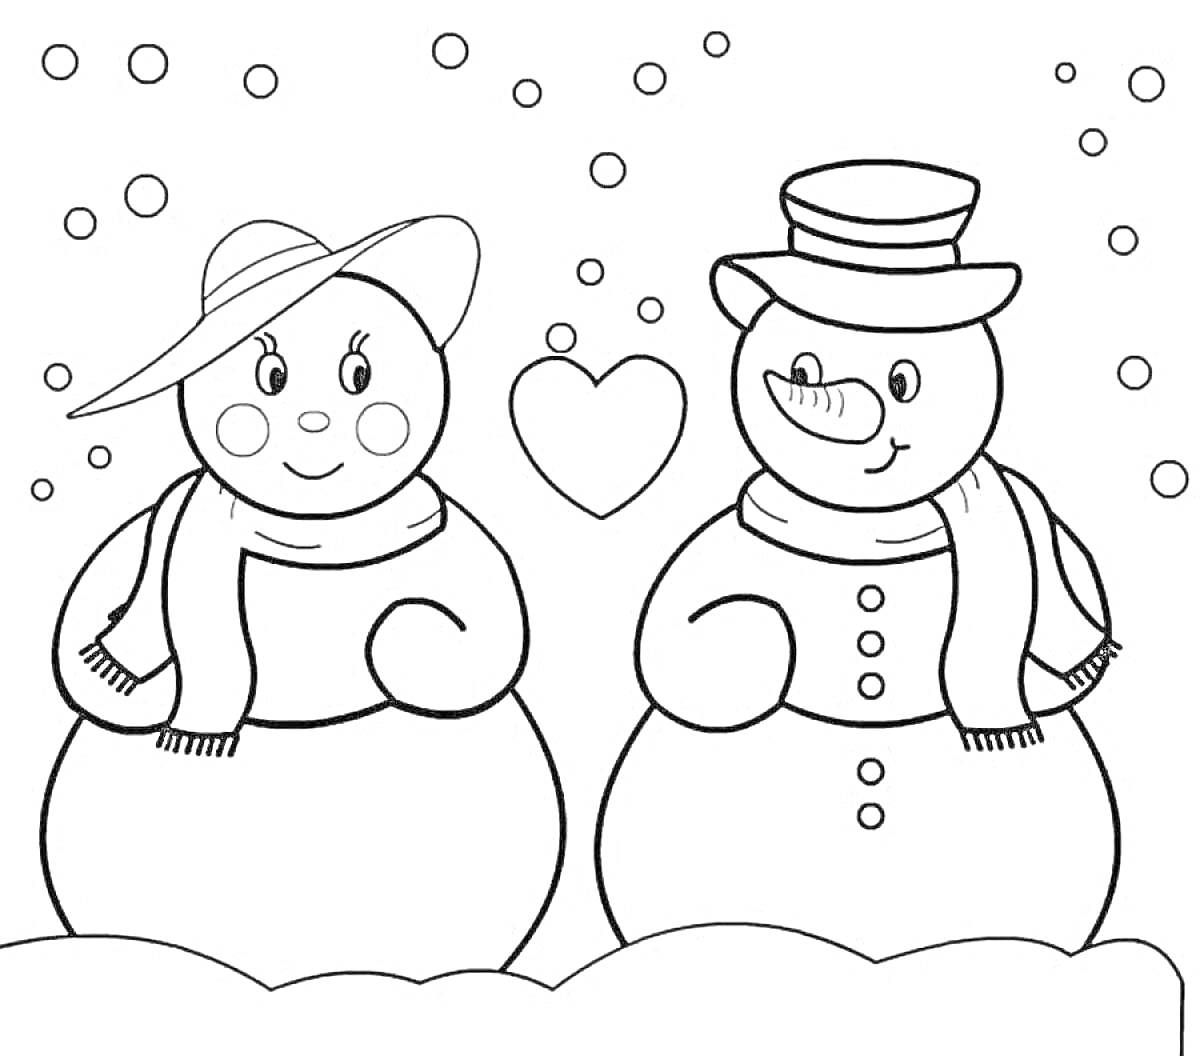 Раскраска Два снеговика с шапками и шарфами, сердце между ними, снежинки на фоне